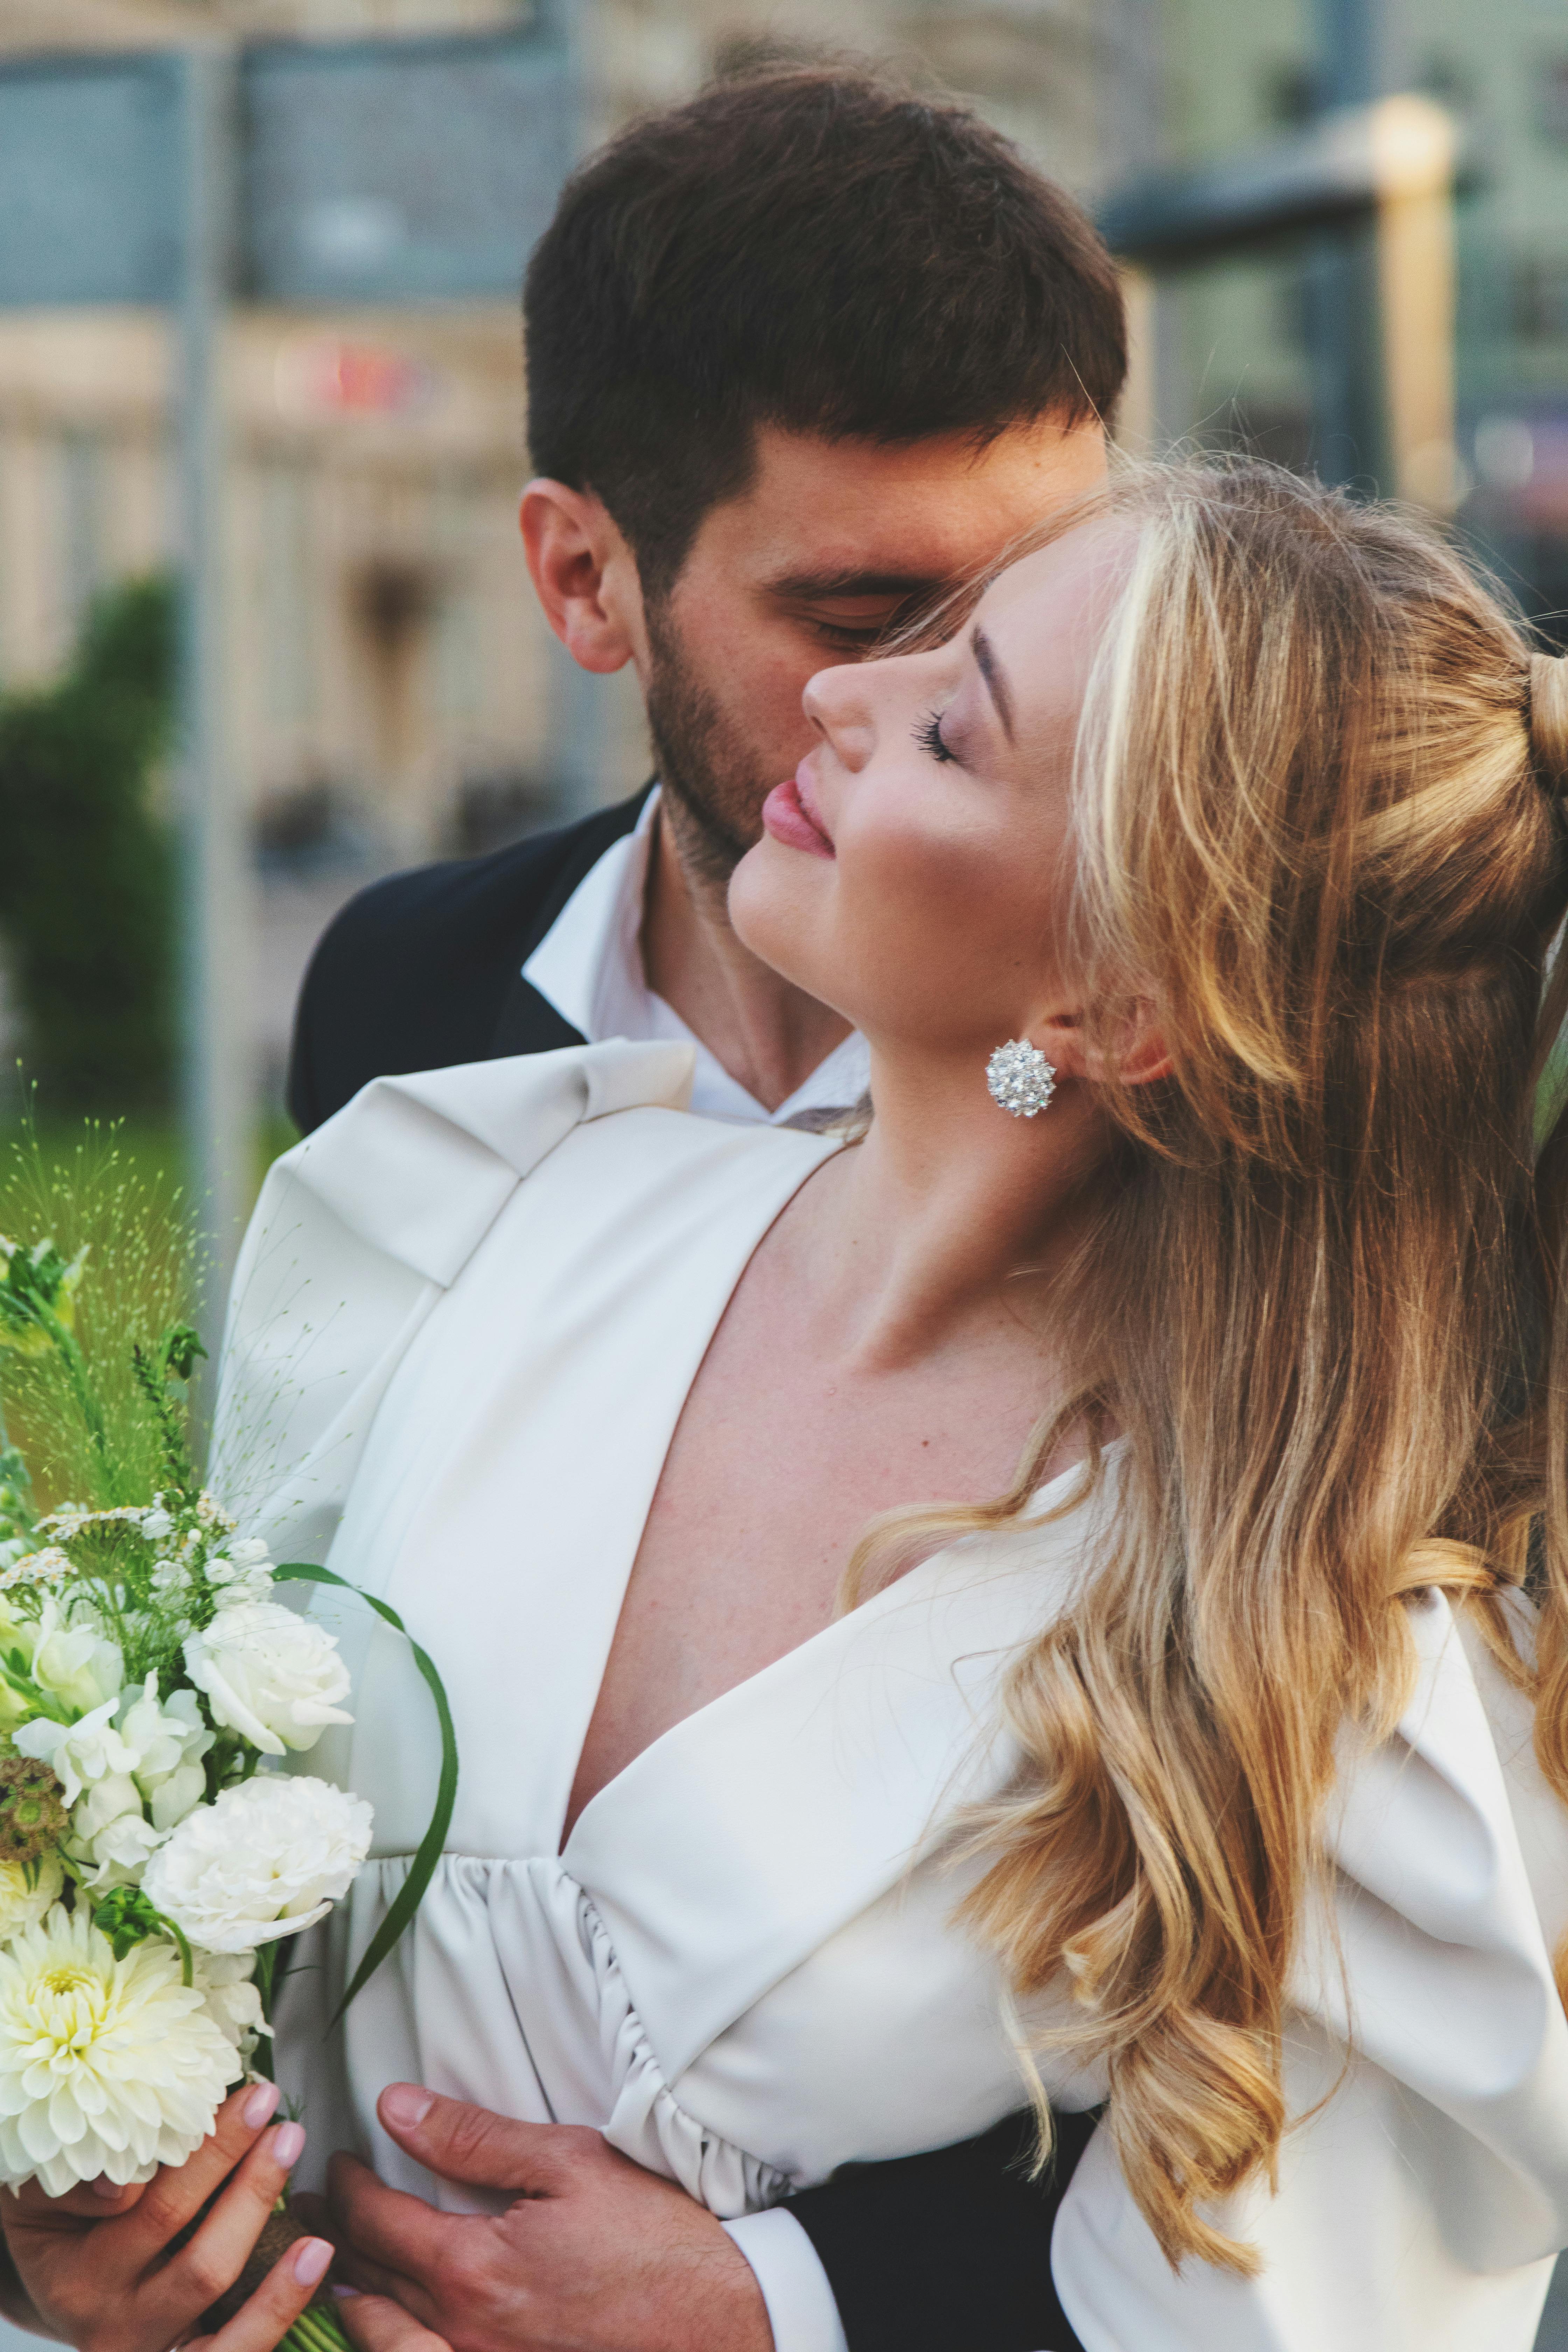 Un couple s'embrassant le jour de son mariage | Source : Pexels